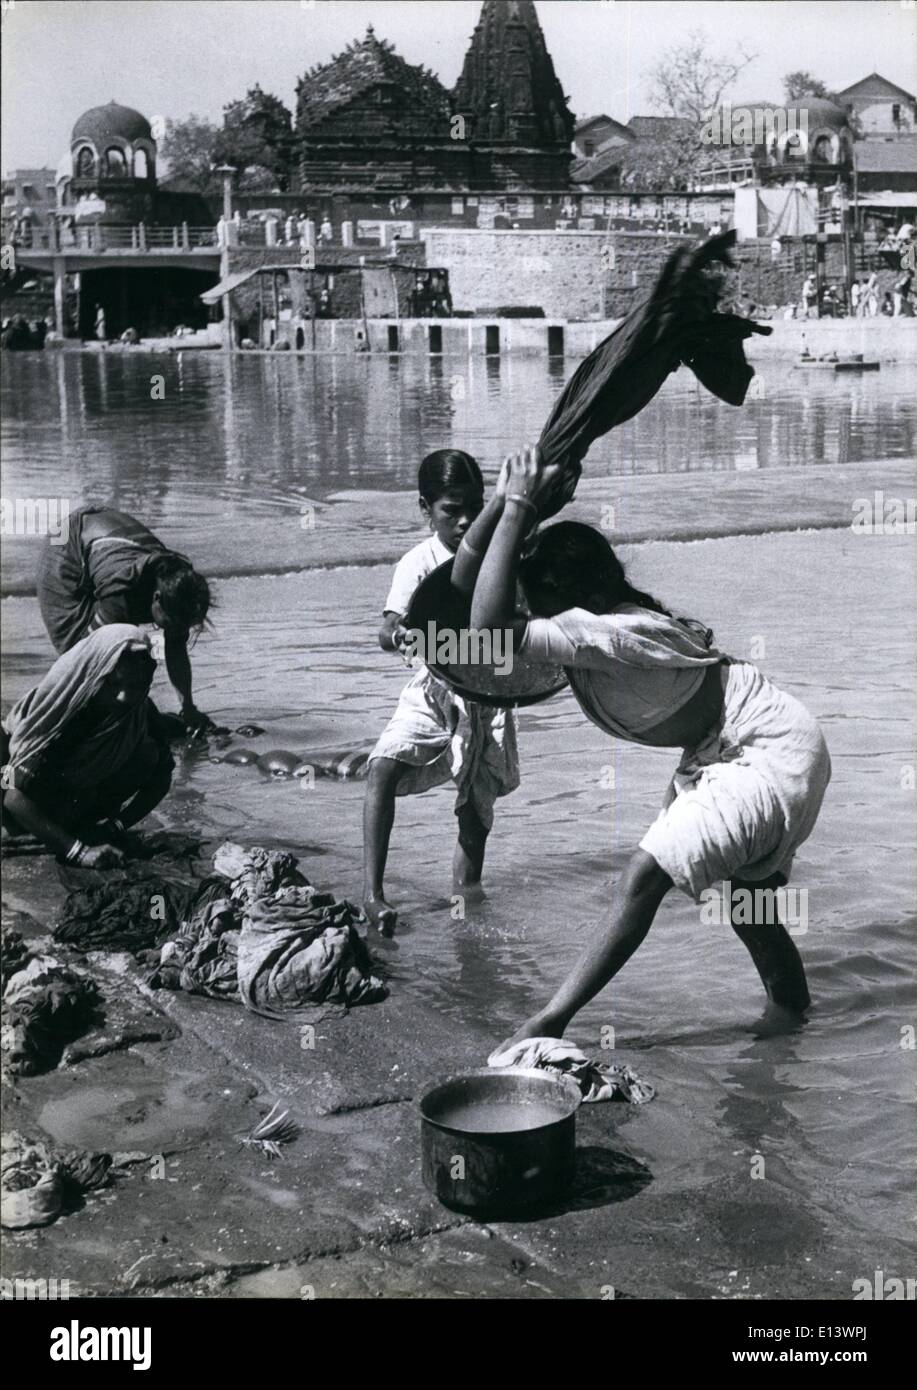 Marzo 27, 2012 - Las niñas indias ganar dinero para ayudar a sus familias lavando ropa en el río. Golpean la ropa contra las rocas para forzar el agua a través de la tela y lave la suciedad. El trabajo es duro en el sol caliente y el pago reducido. Foto de stock